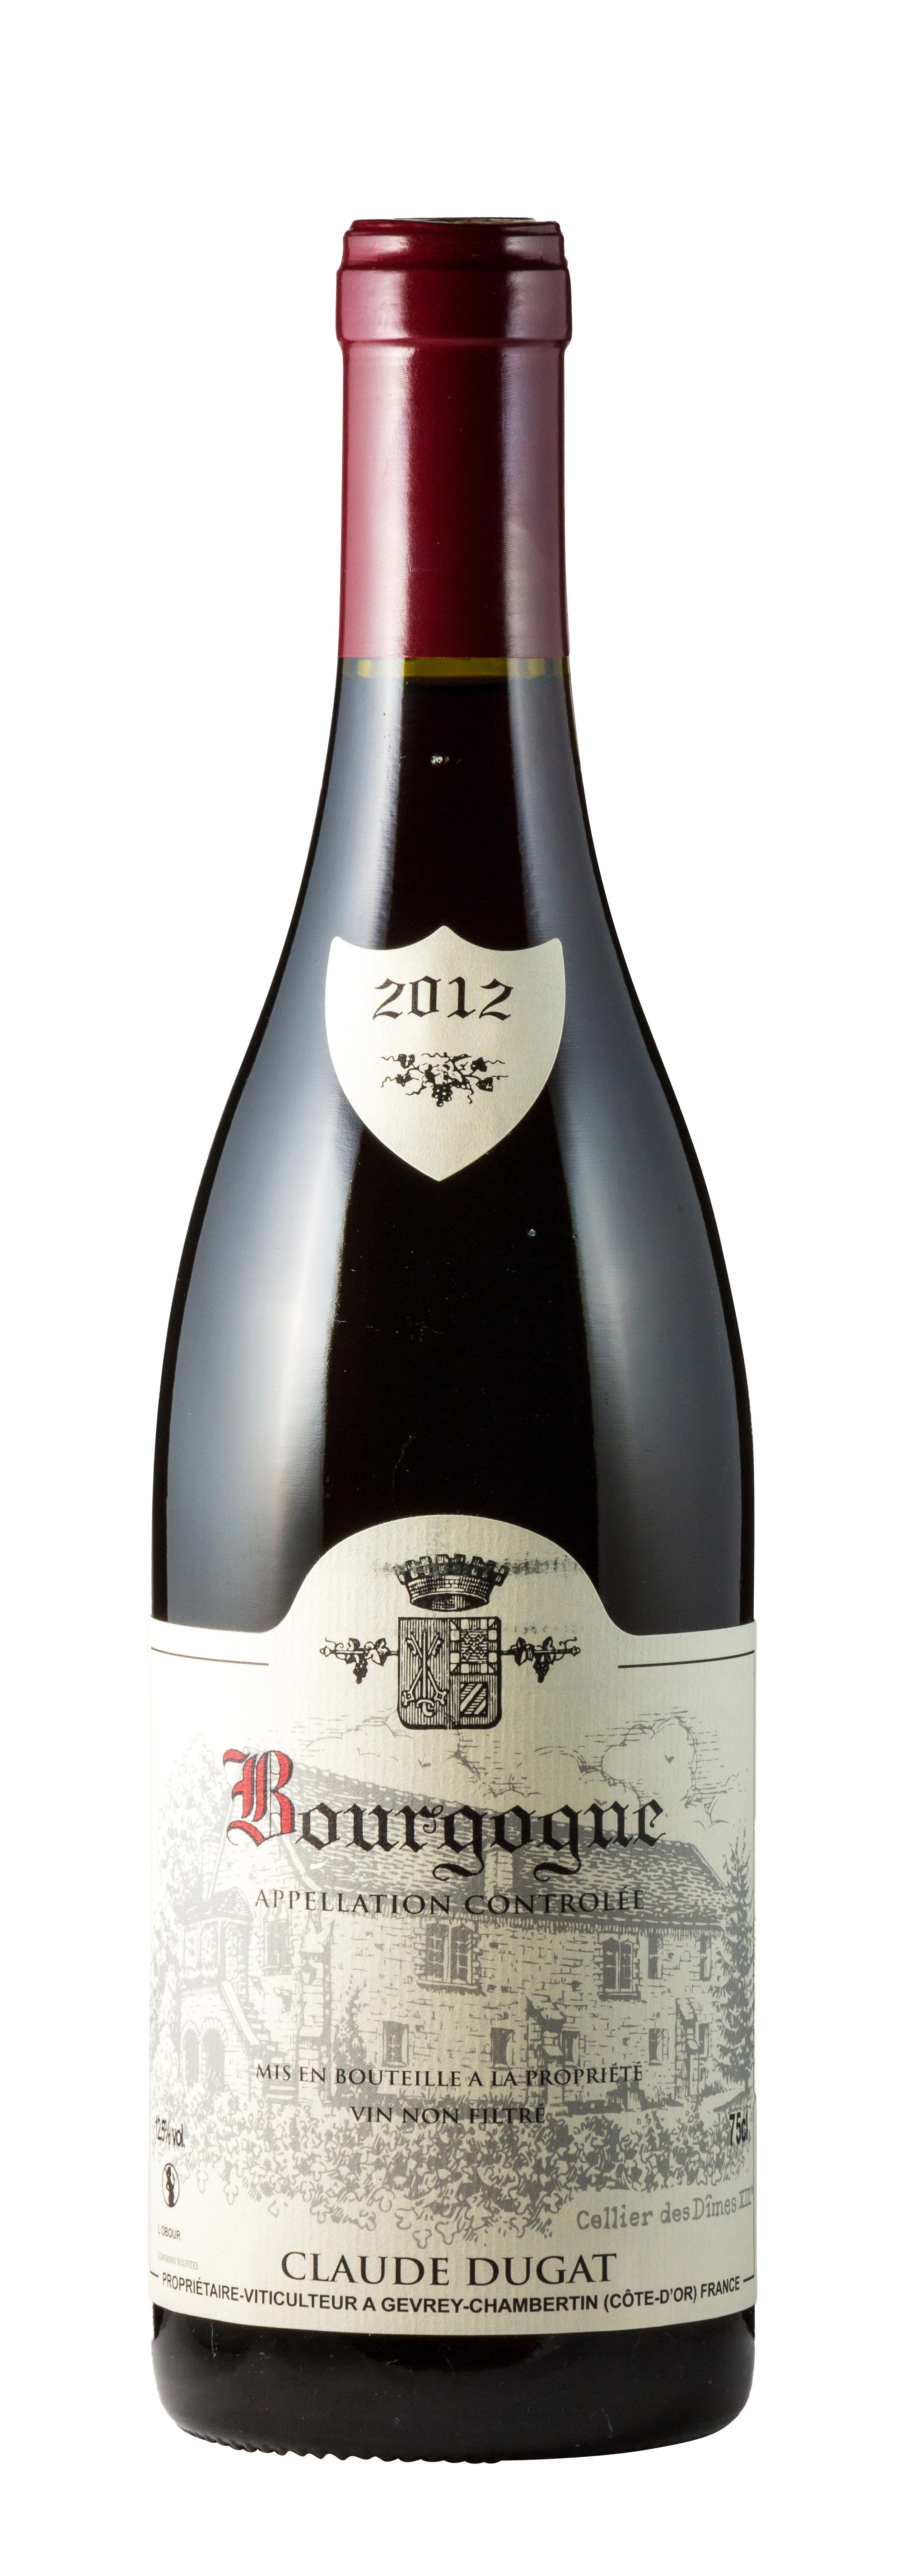 Bourgogne AOC 2012